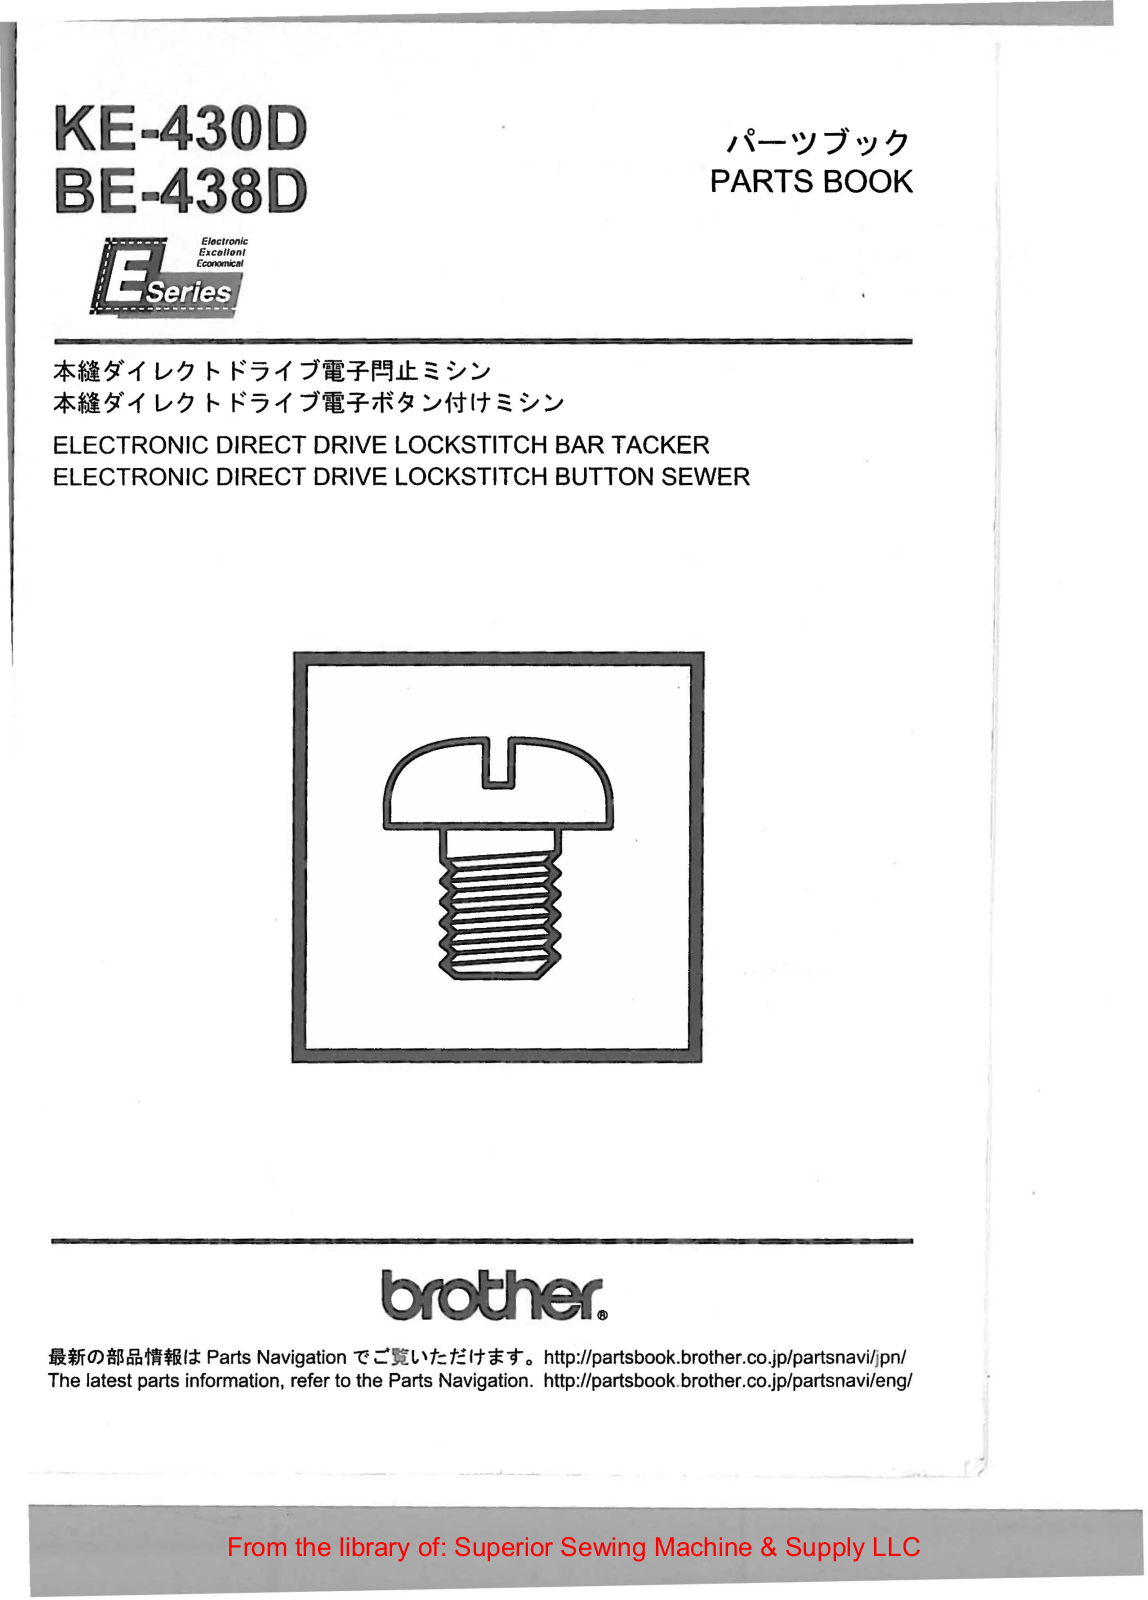 Brother KE-430D, BE-438D User Manual